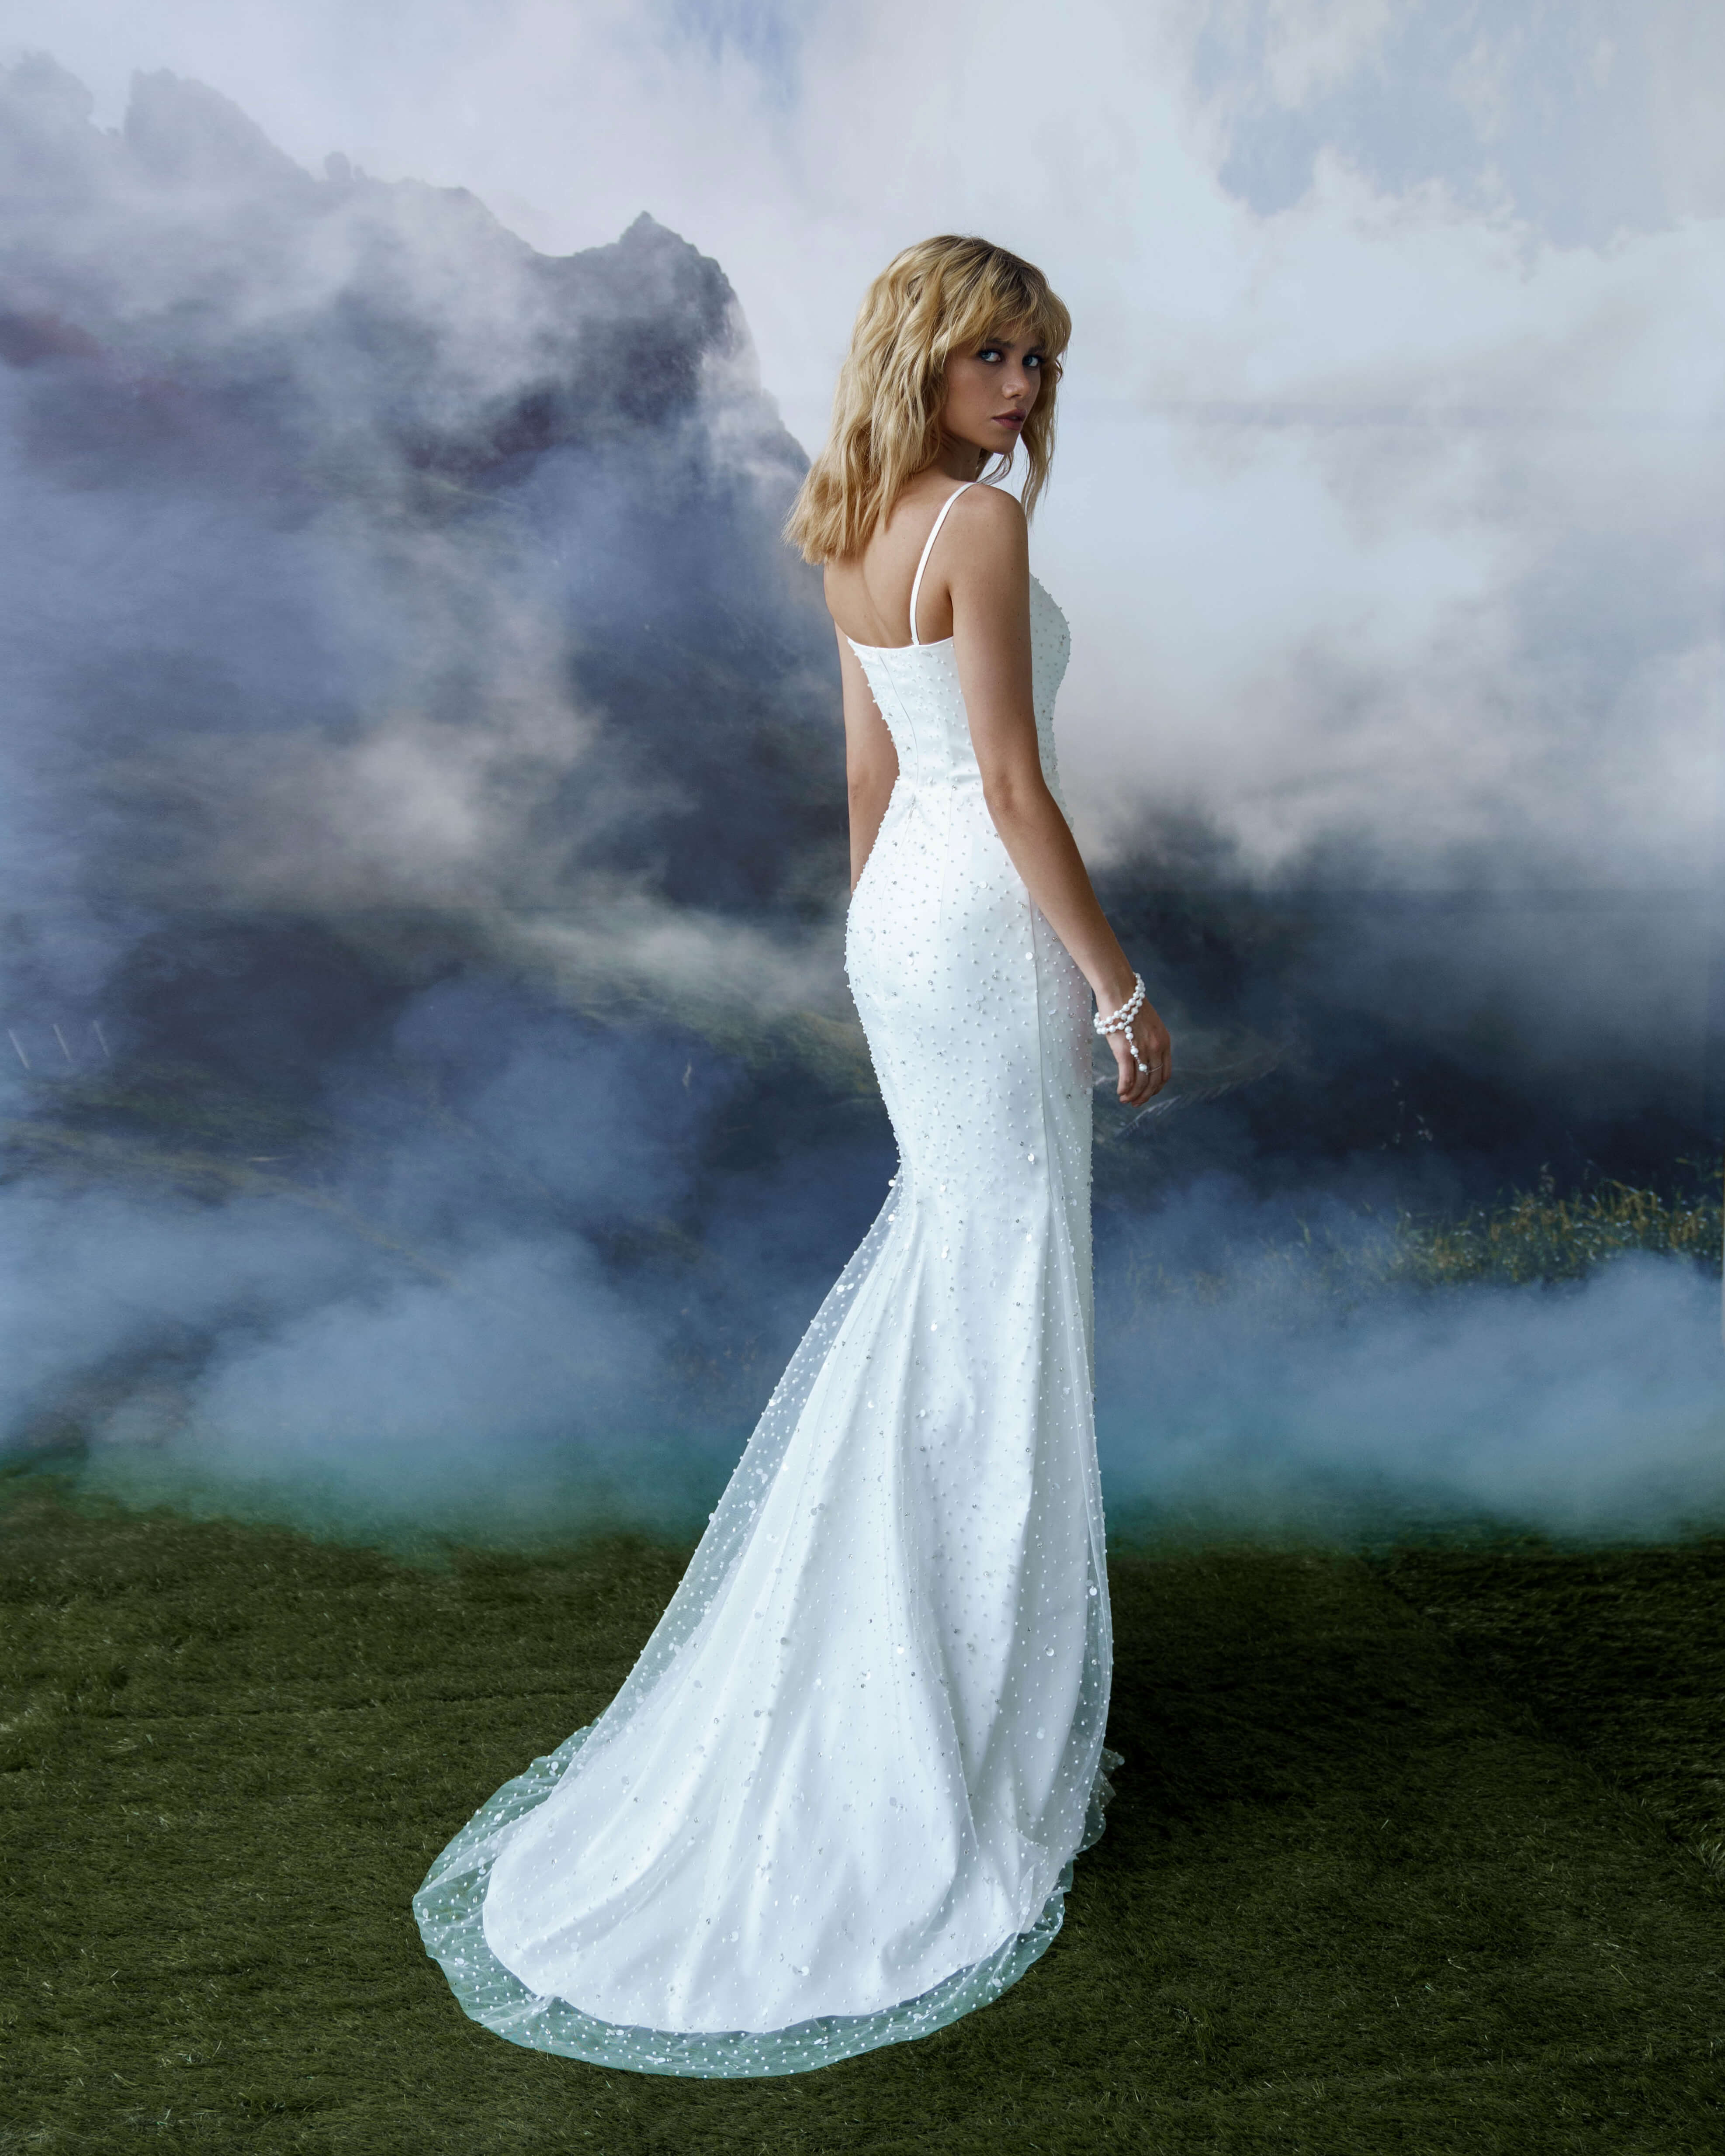 Купить свадебное платье «Сильвана» Бламмо Биамо из коллекции Сказка 2022 года в салоне «Мэри Трюфель»